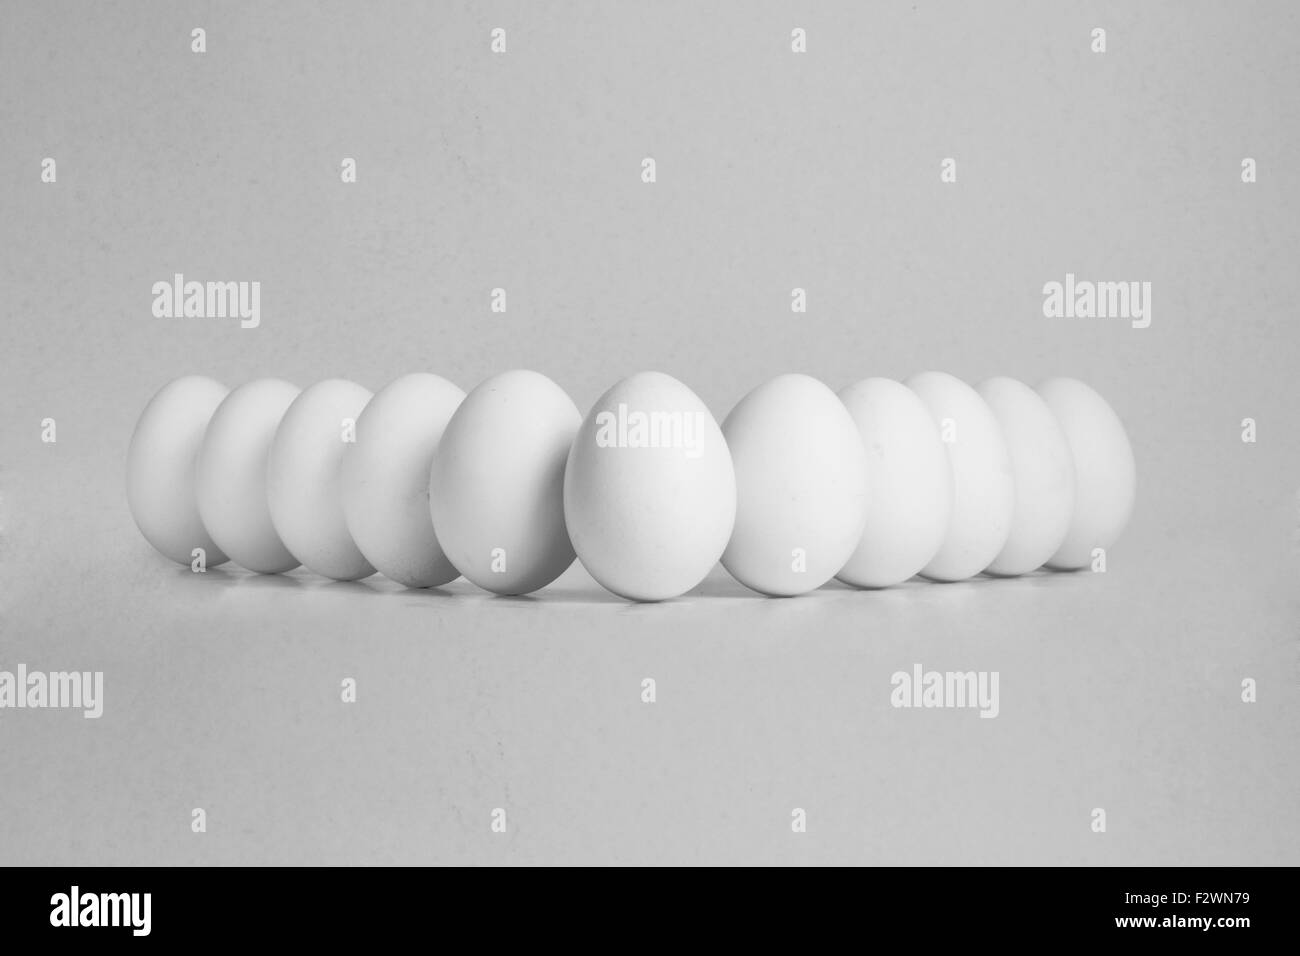 11 huevos en una fila sobre fondo blanco aislado Foto de stock